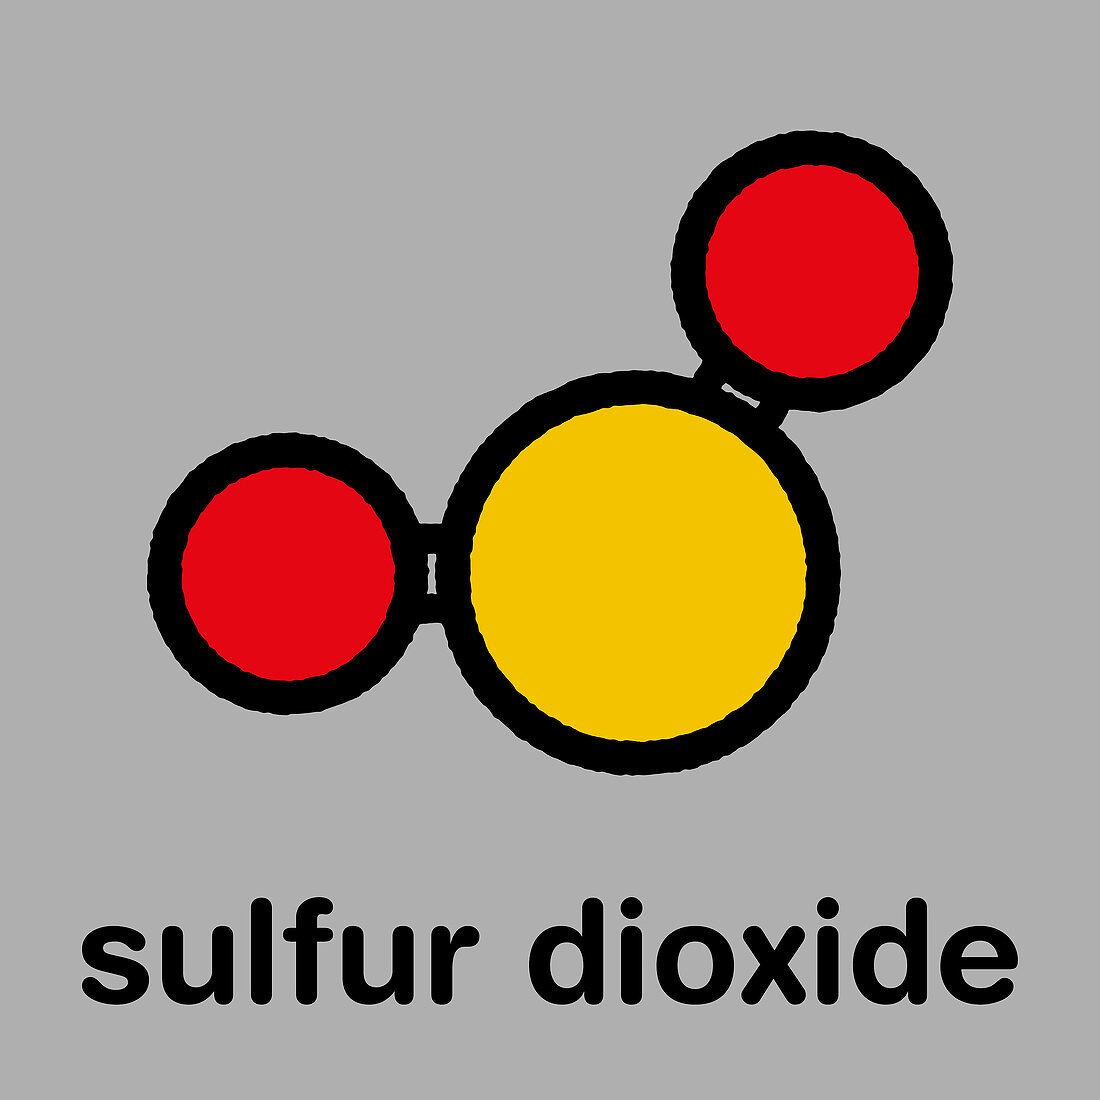 Sulfur dioxide food preservative molecule, illustration